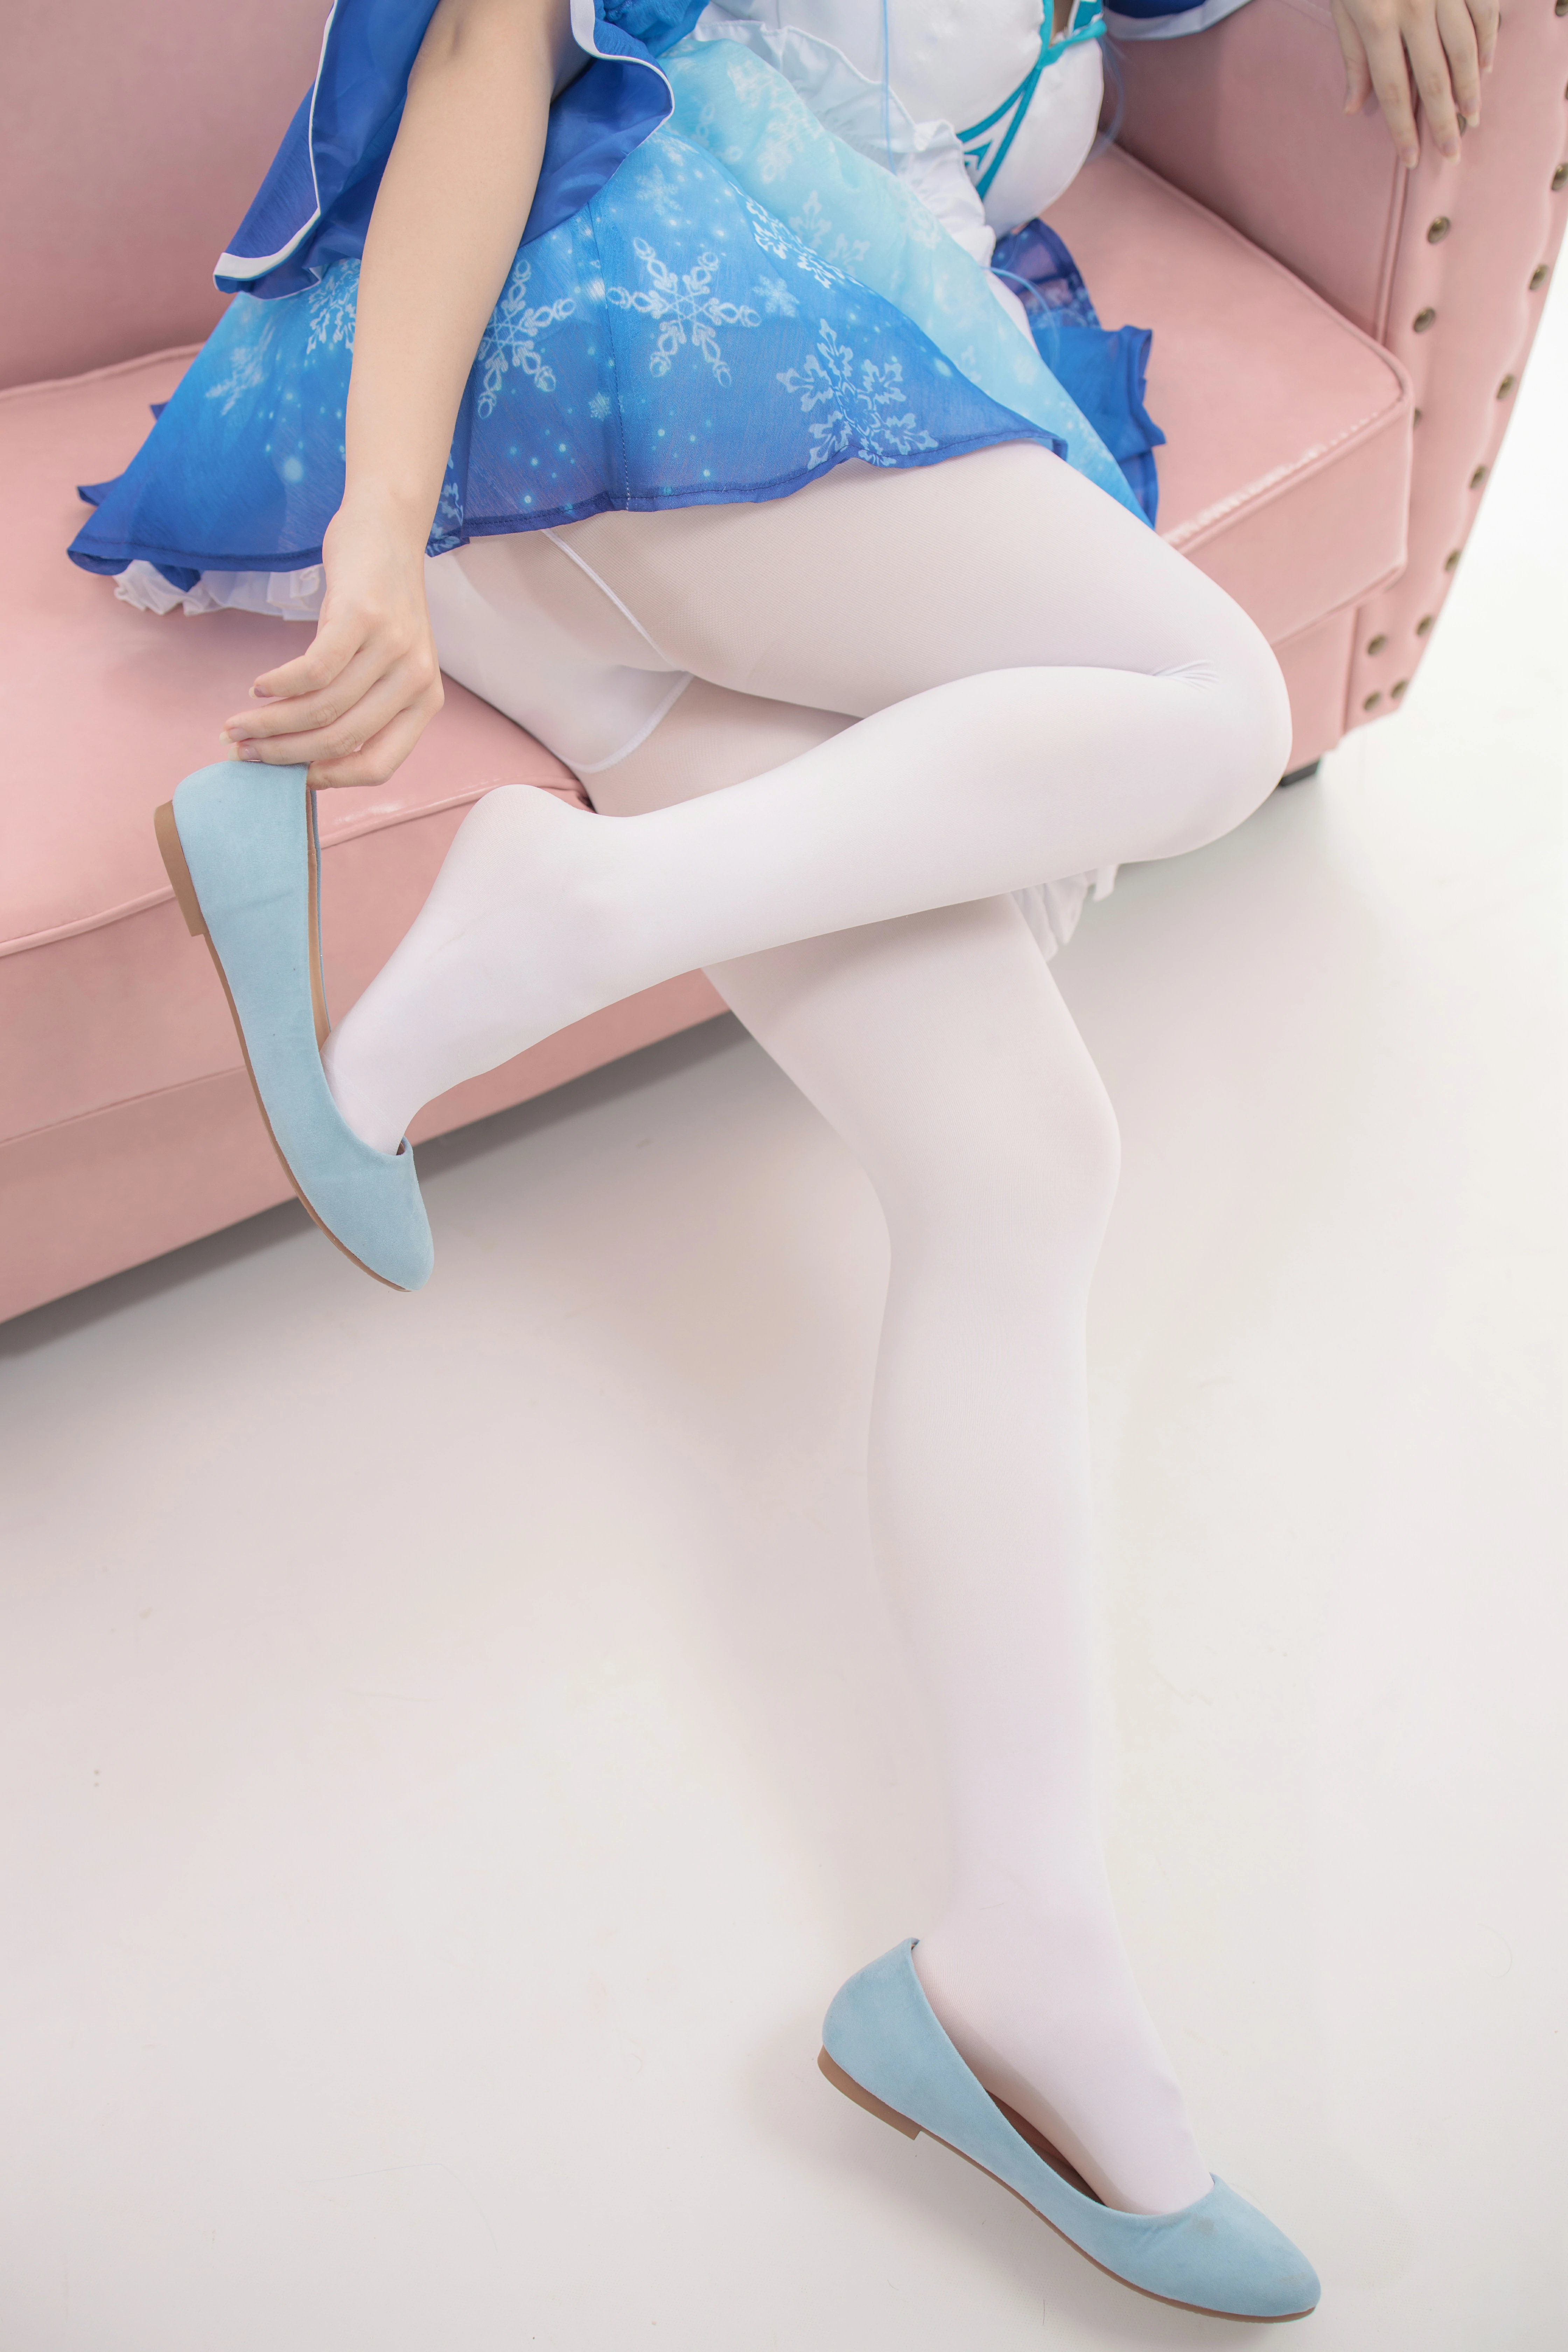 [森萝财团]JKFUN-023 300D白丝 雪晴 蓝色情趣透视制服裙加白色丝袜美腿玉足性感私房写真集,